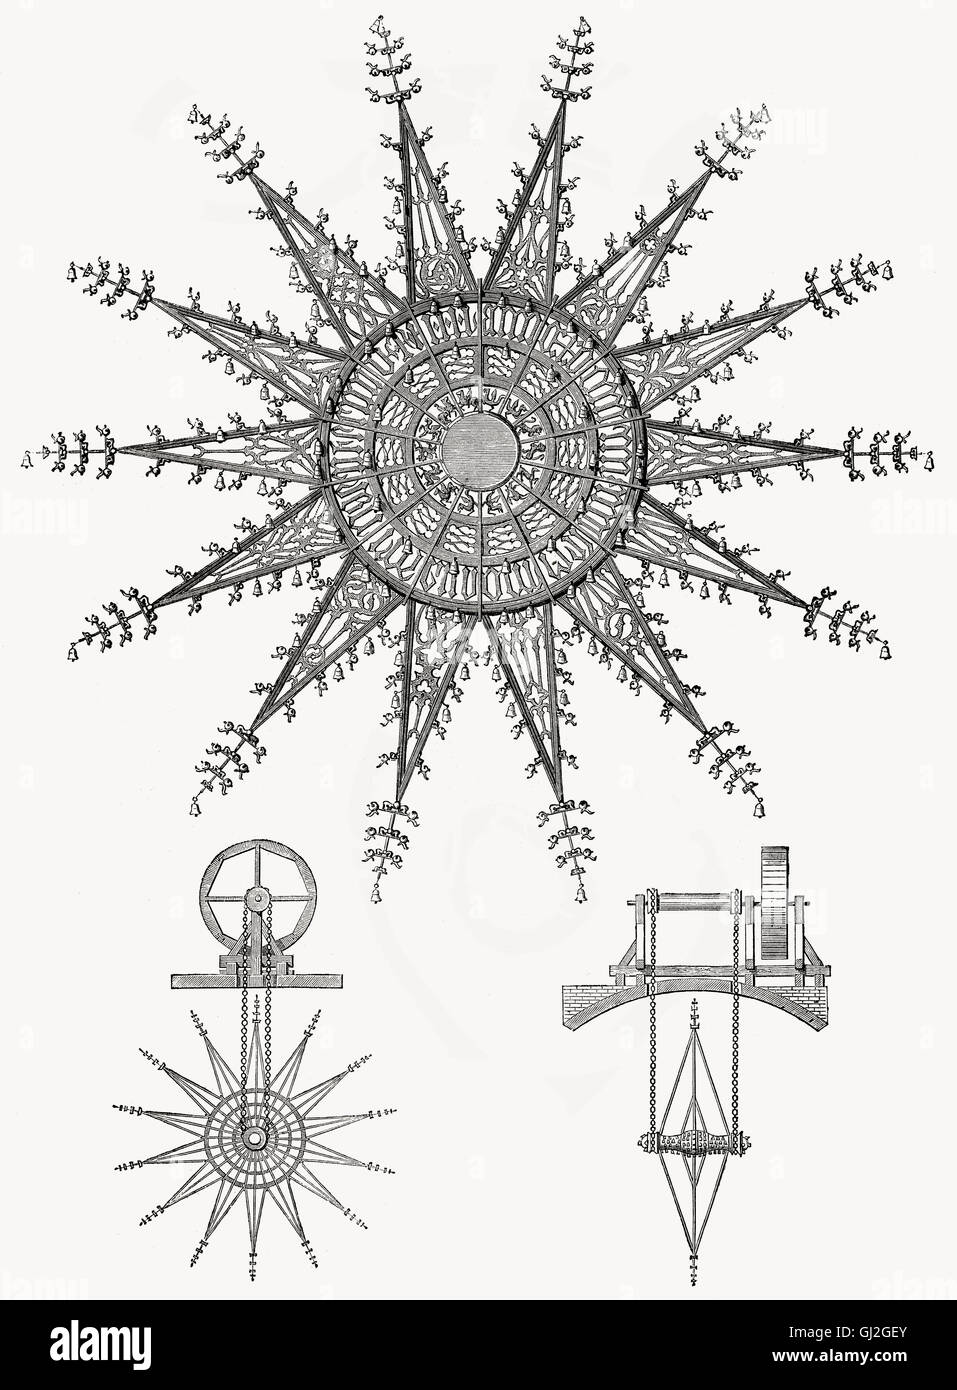 Una campana ruota, teoria musicale da Athanasius Kircher, 1602- 1680, un monastero del XVII secolo studioso gesuita tedesco e polymath Foto Stock